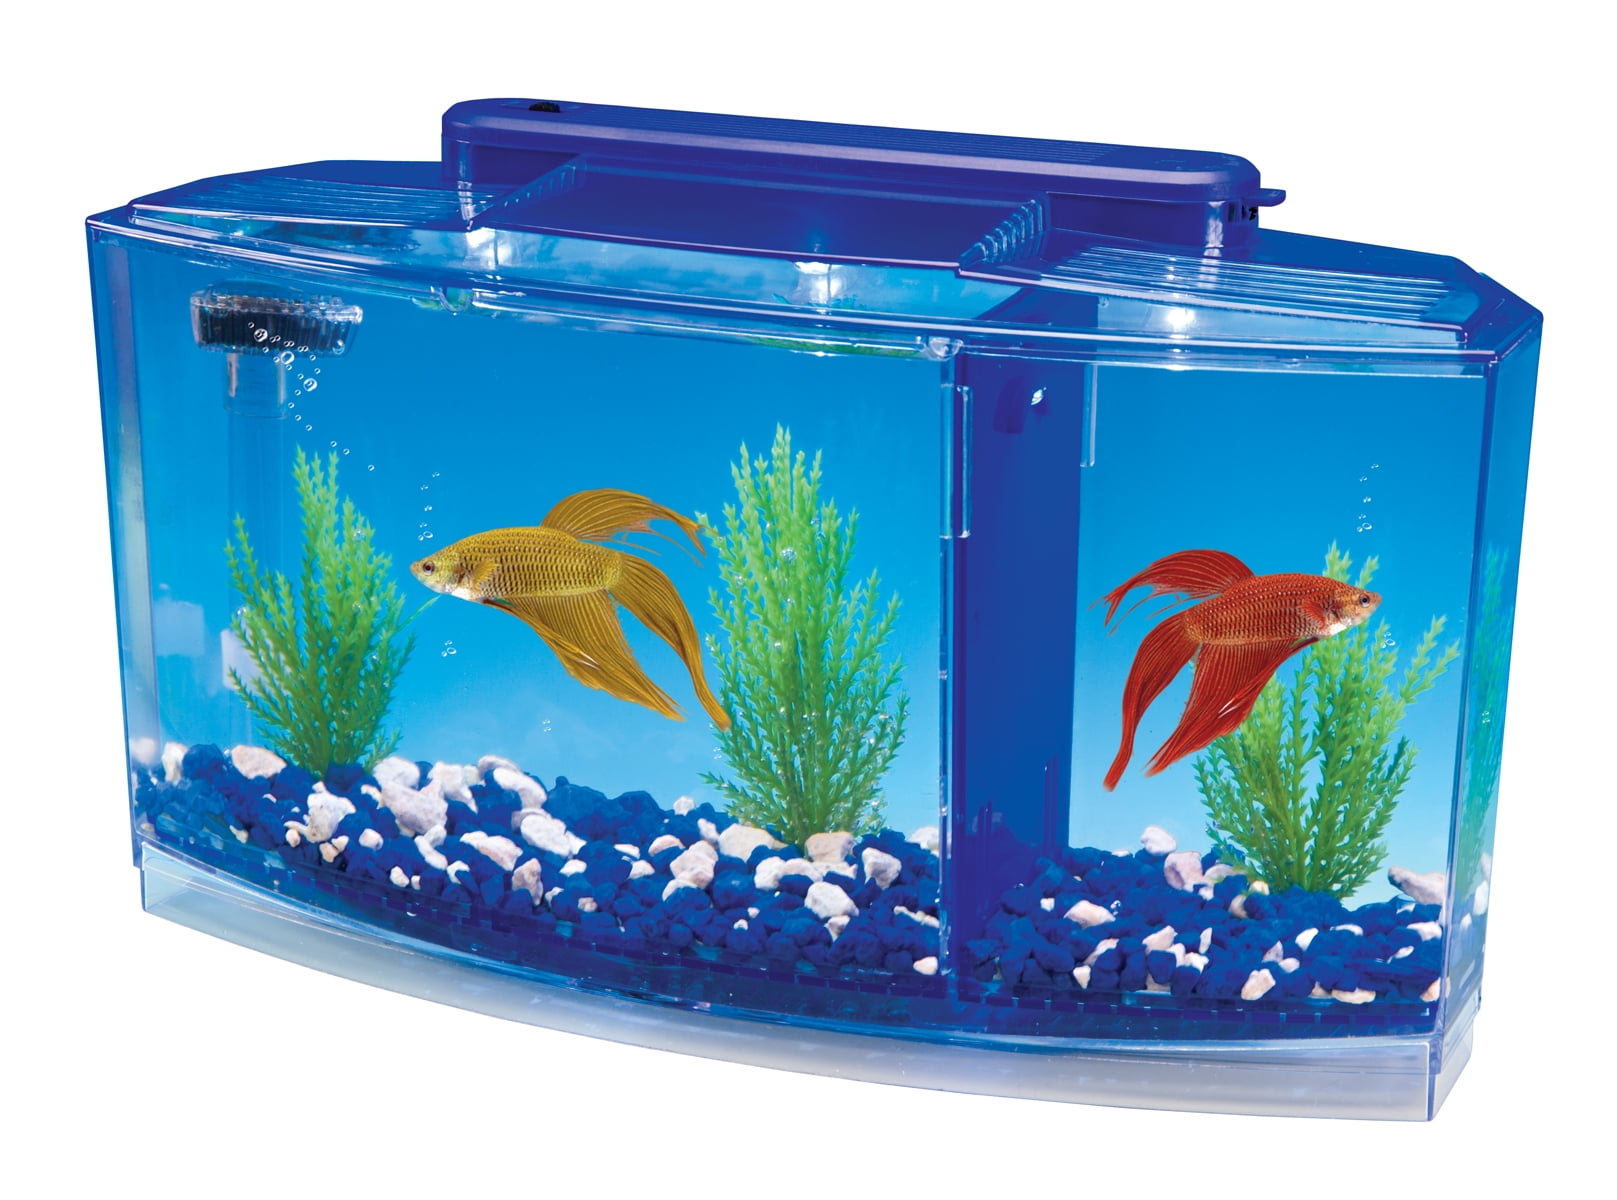 Купить живых аквариумных рыбок. Аквариум Betta. Аквариум Double Tank Kit. Аквариум (Fish Tank) 2009. Аквариум Box Betta 1.3.